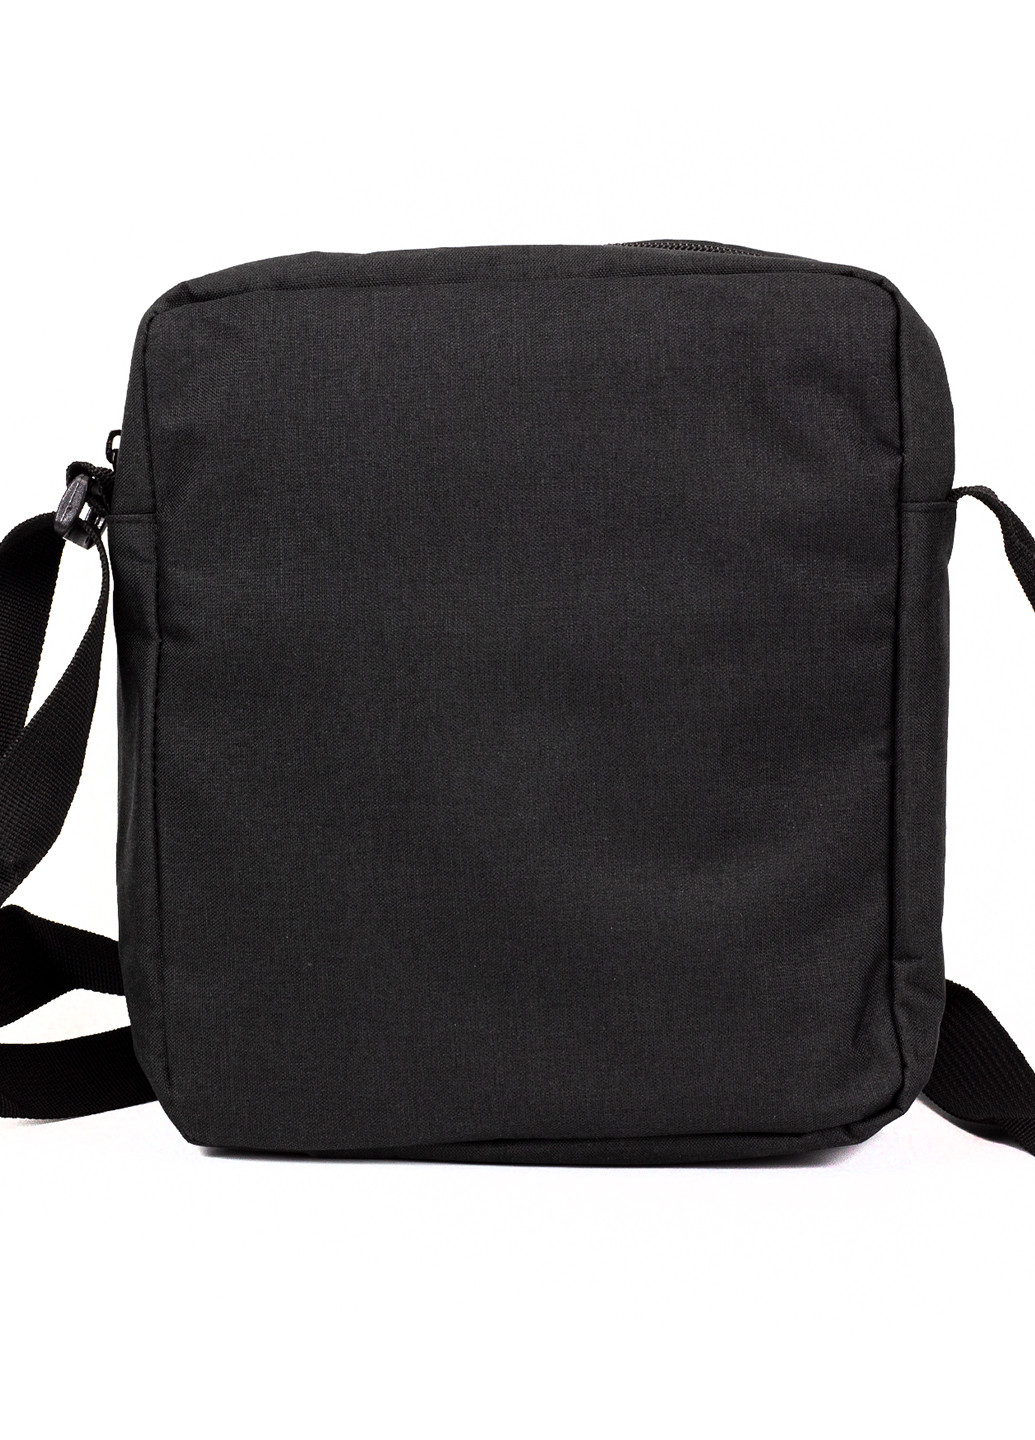 Мужская сумка через плечо барсетка Joy Art Черная JoyArt klp2542 (228857112)